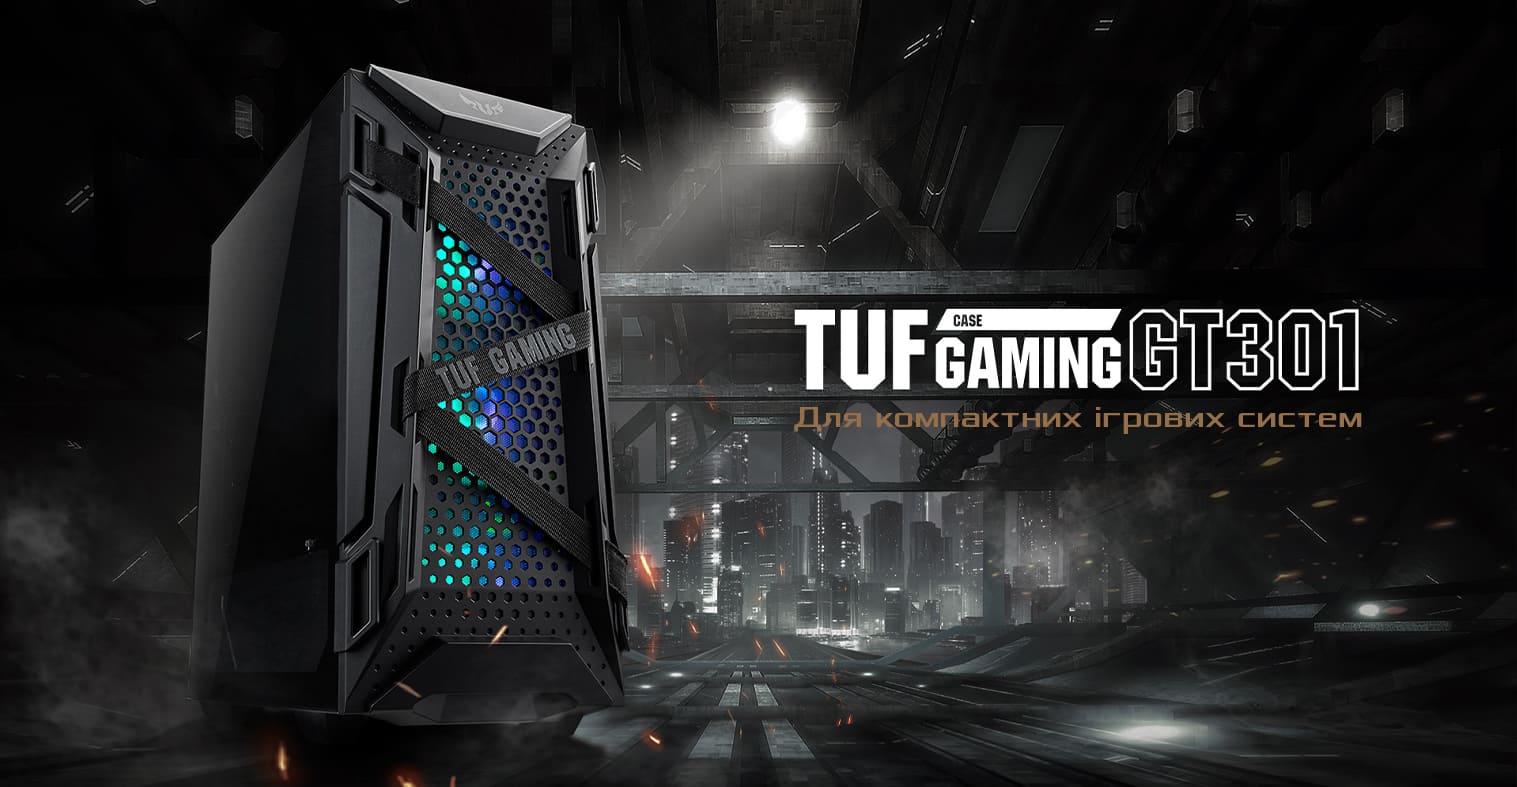 TUF Gaming GT301. Для компактних ігрових систем